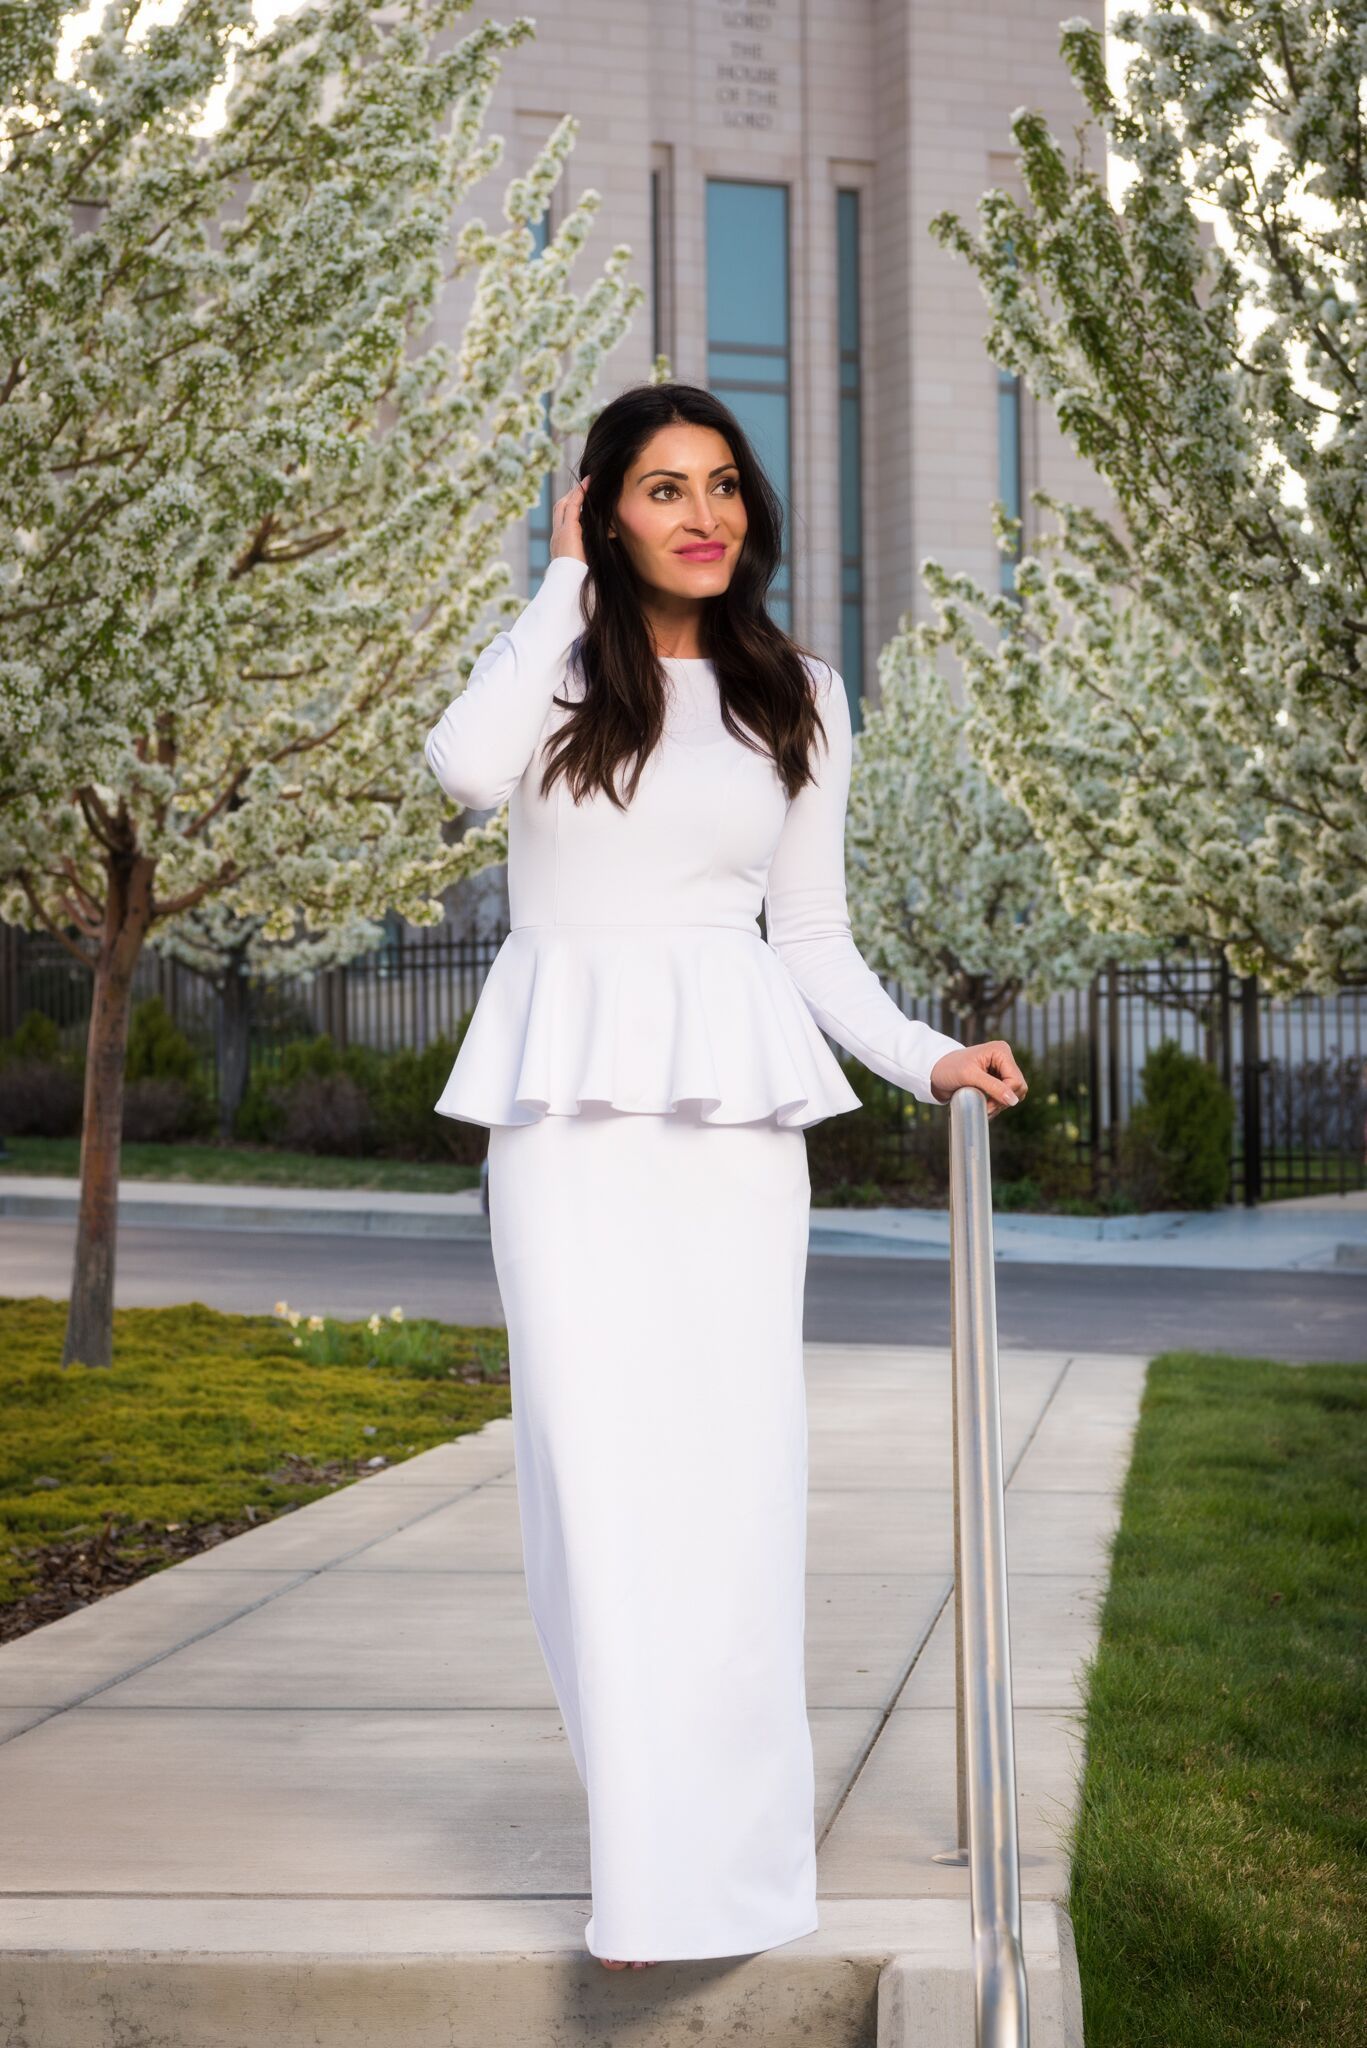 White Modest Dresses: The Amanda by Brigitte Brianna